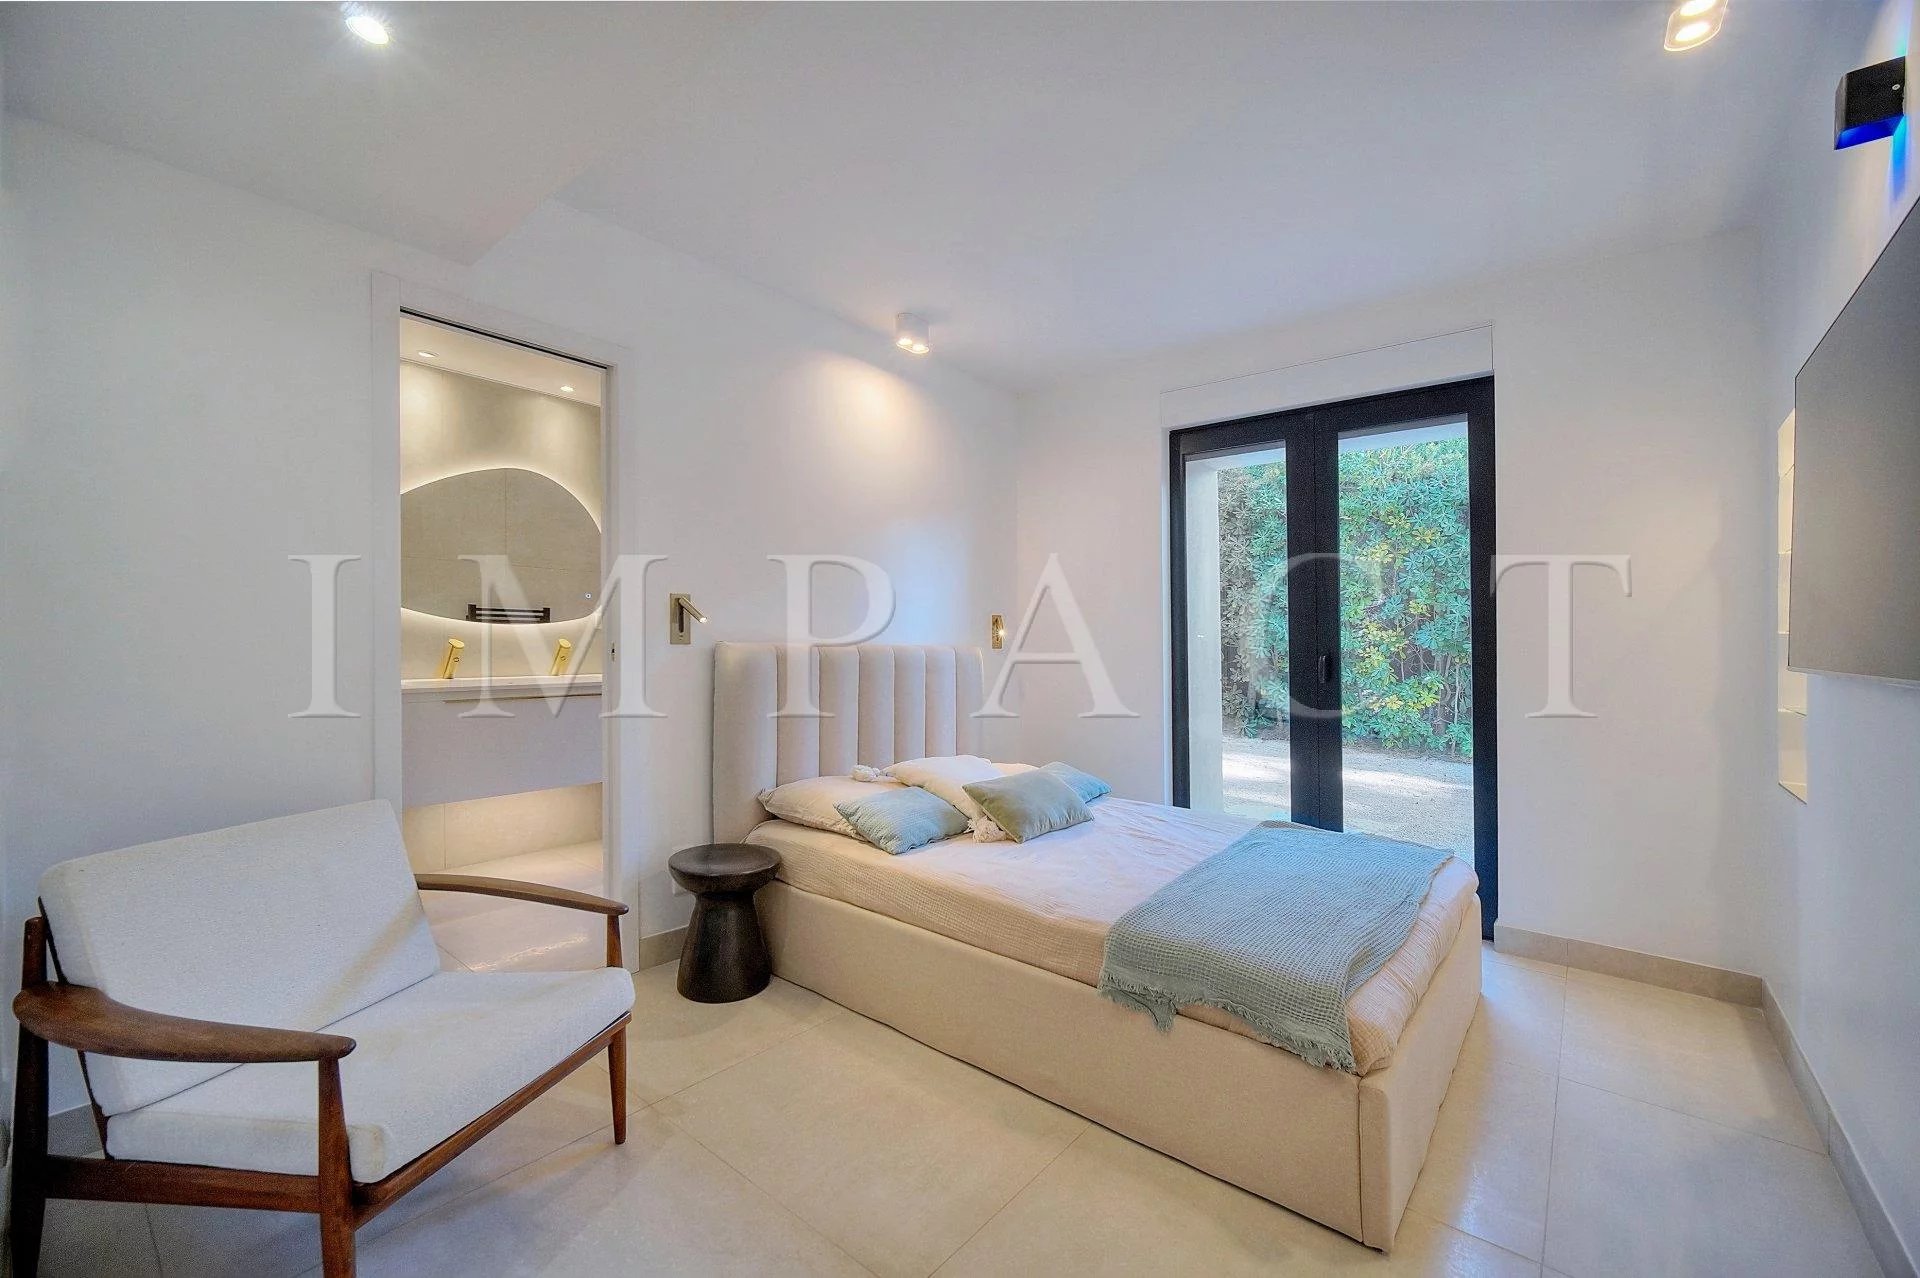 Cannes - Croix-des-Gardes - Villa with sea view for rent